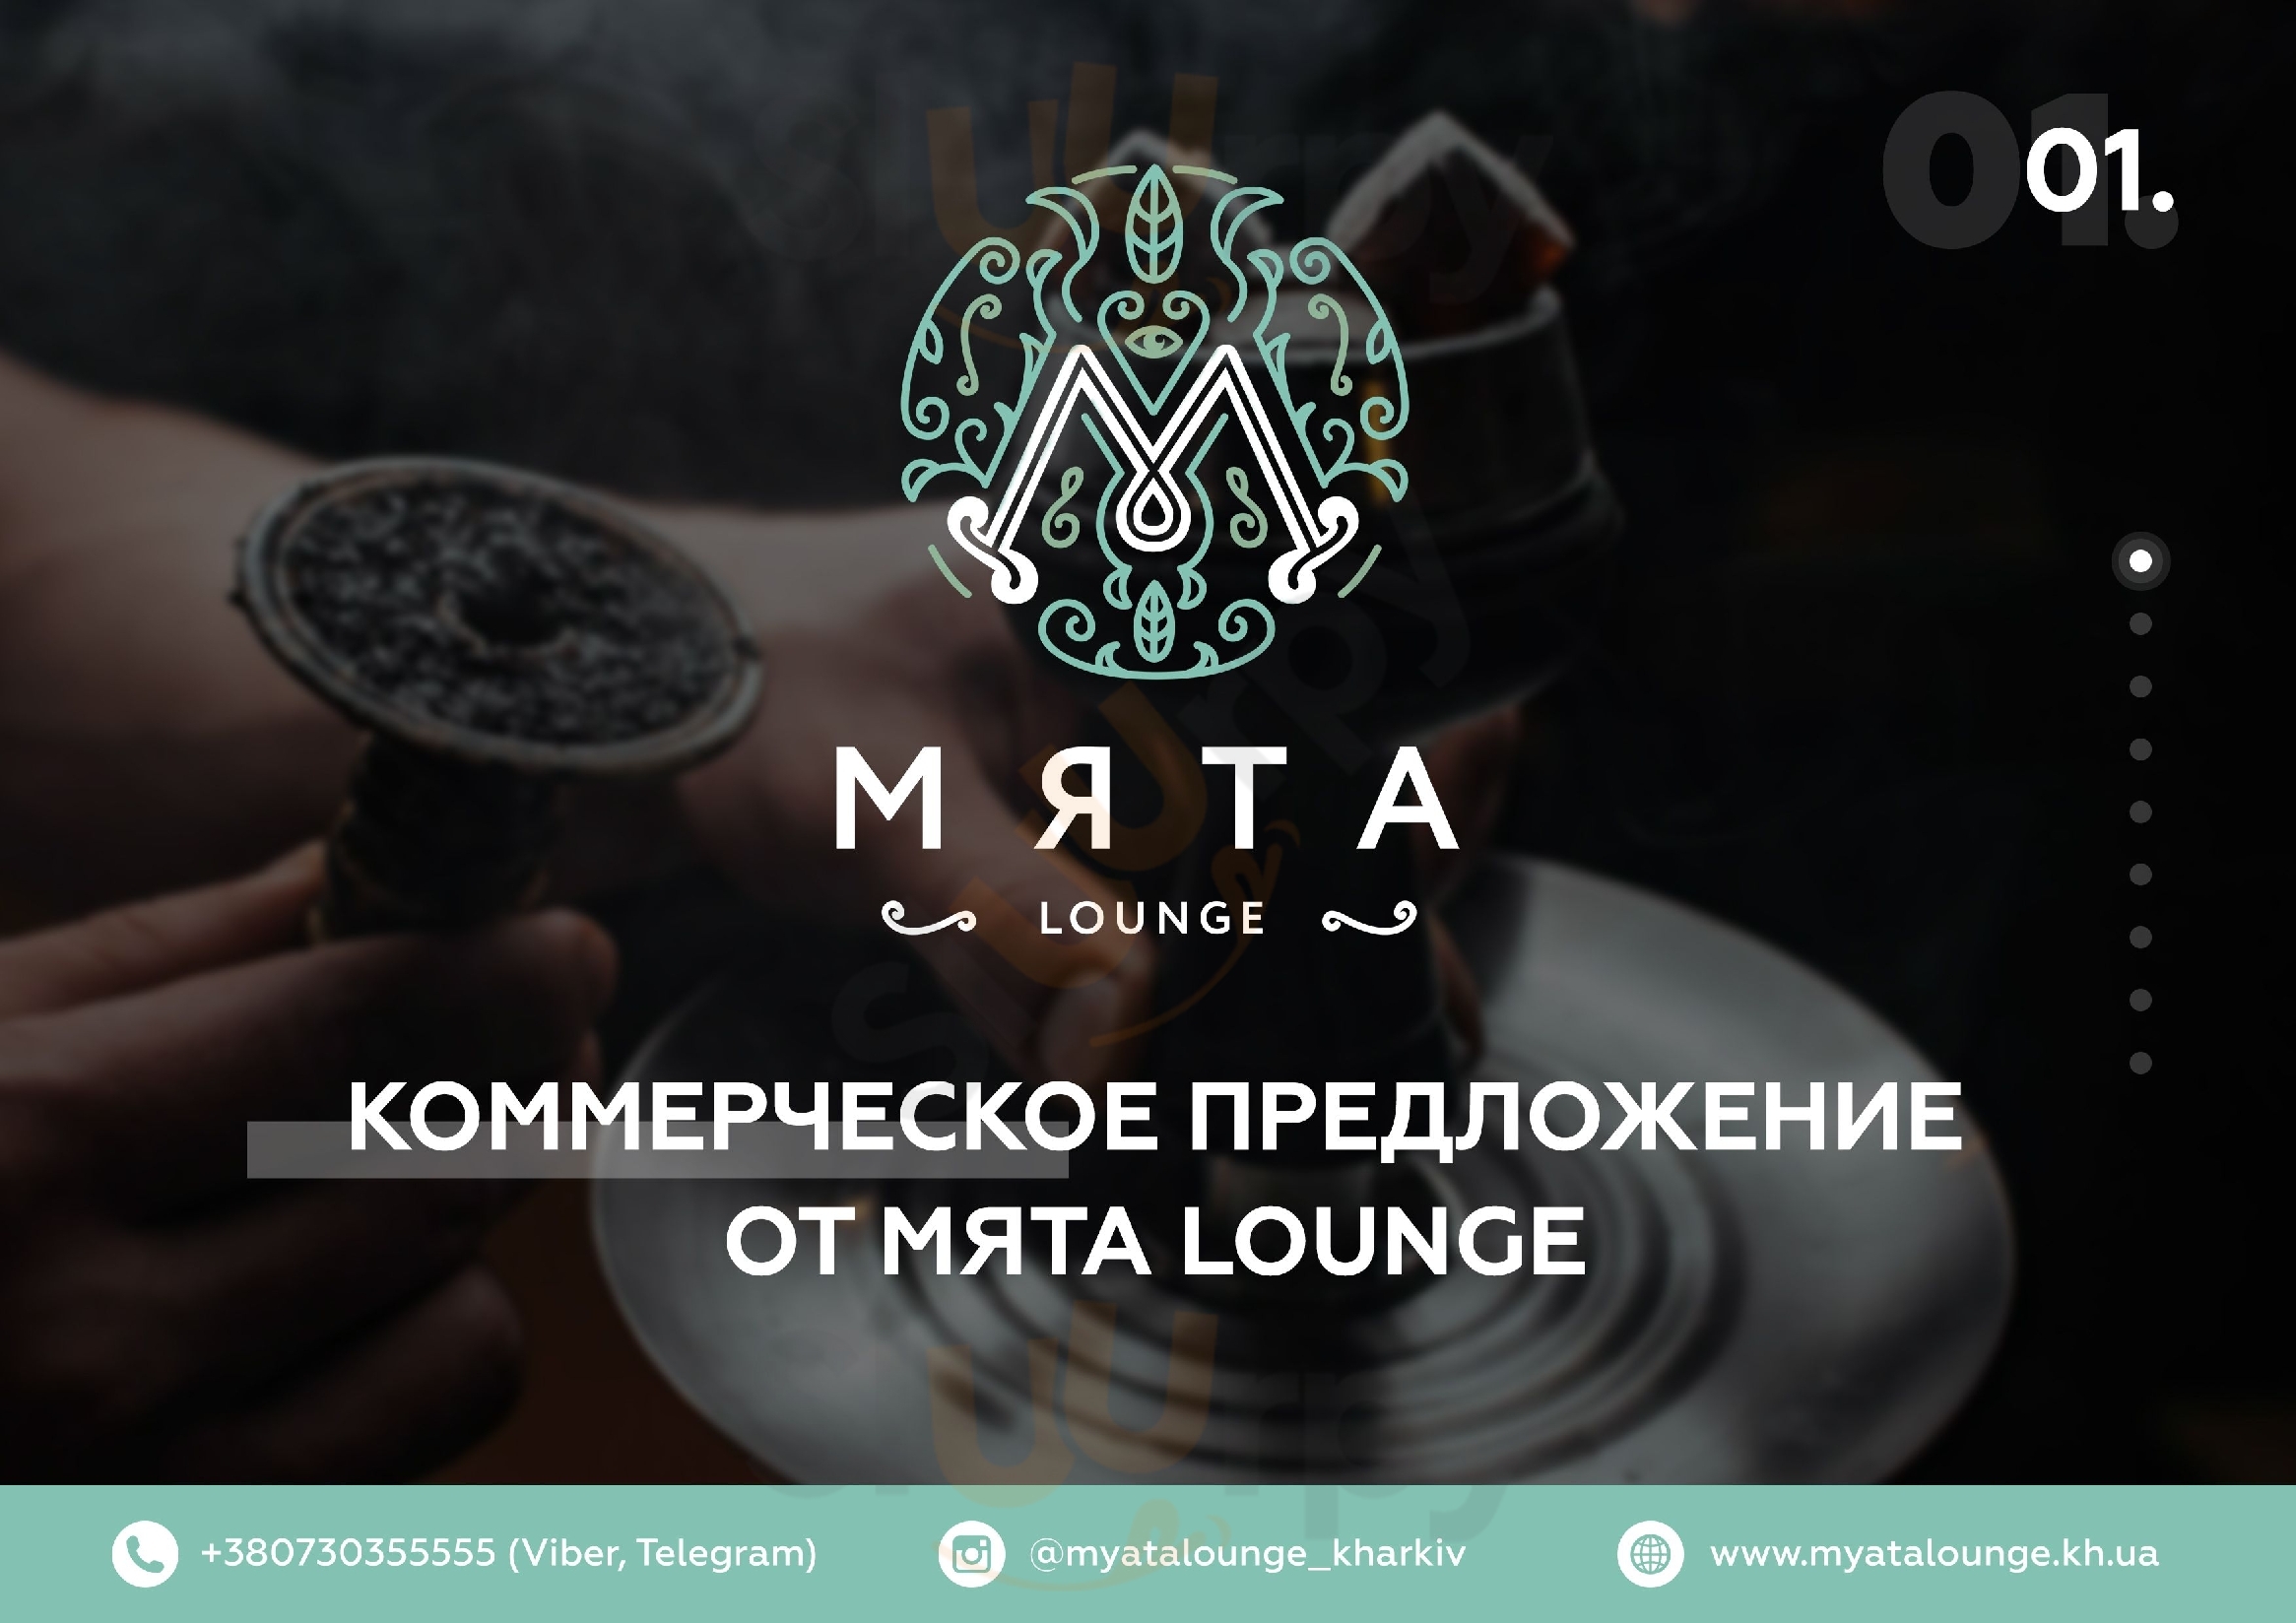 Myata Lounge Kharkiv Menu - 1